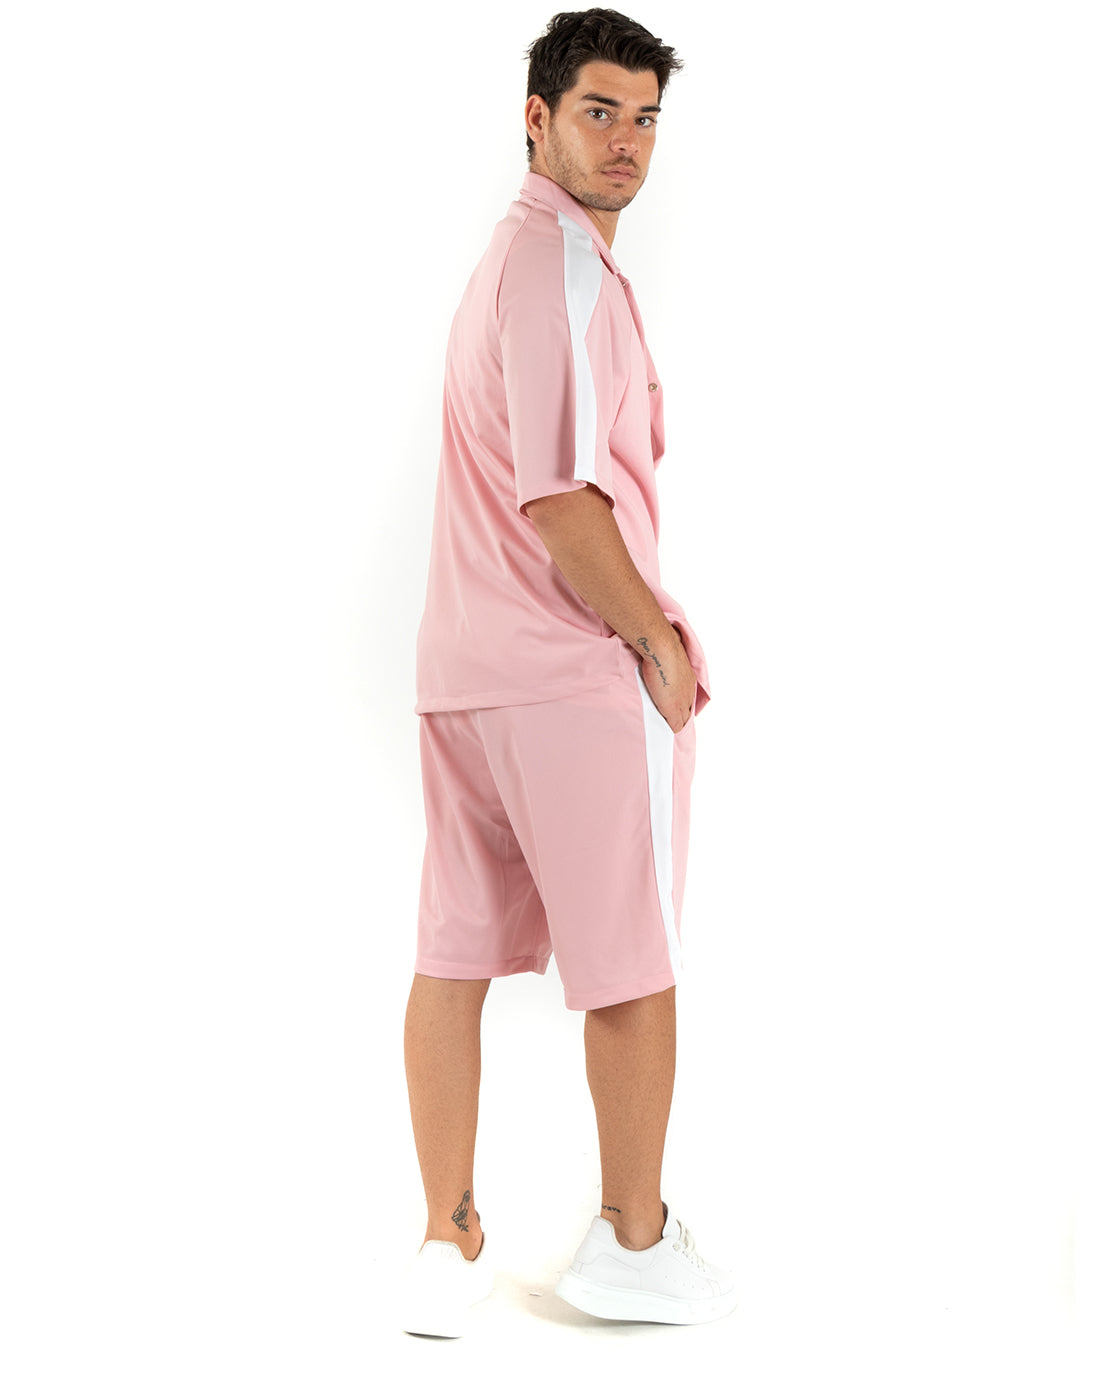 Completo Set Coordinato Uomo Viscosa Camicia Con Colletto Bermuda Outfit Rosa GIOSAL-OU2363A